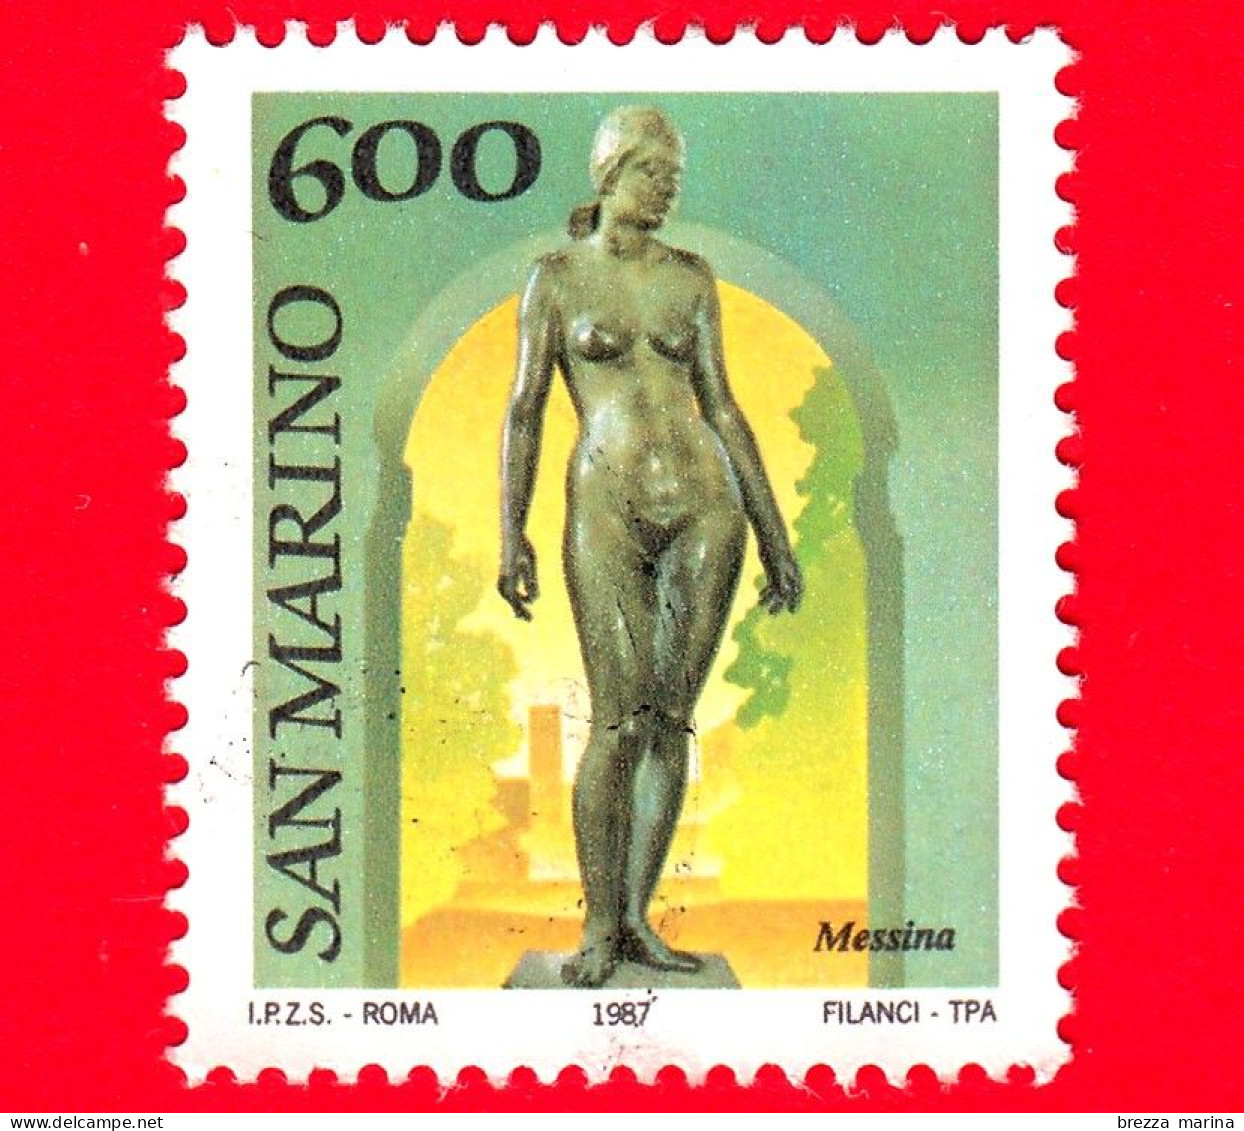 SAN MARINO - Usato - 1987 - Museo All'aperto - Scultura Di Messina - Nudo - 600 - Gebruikt